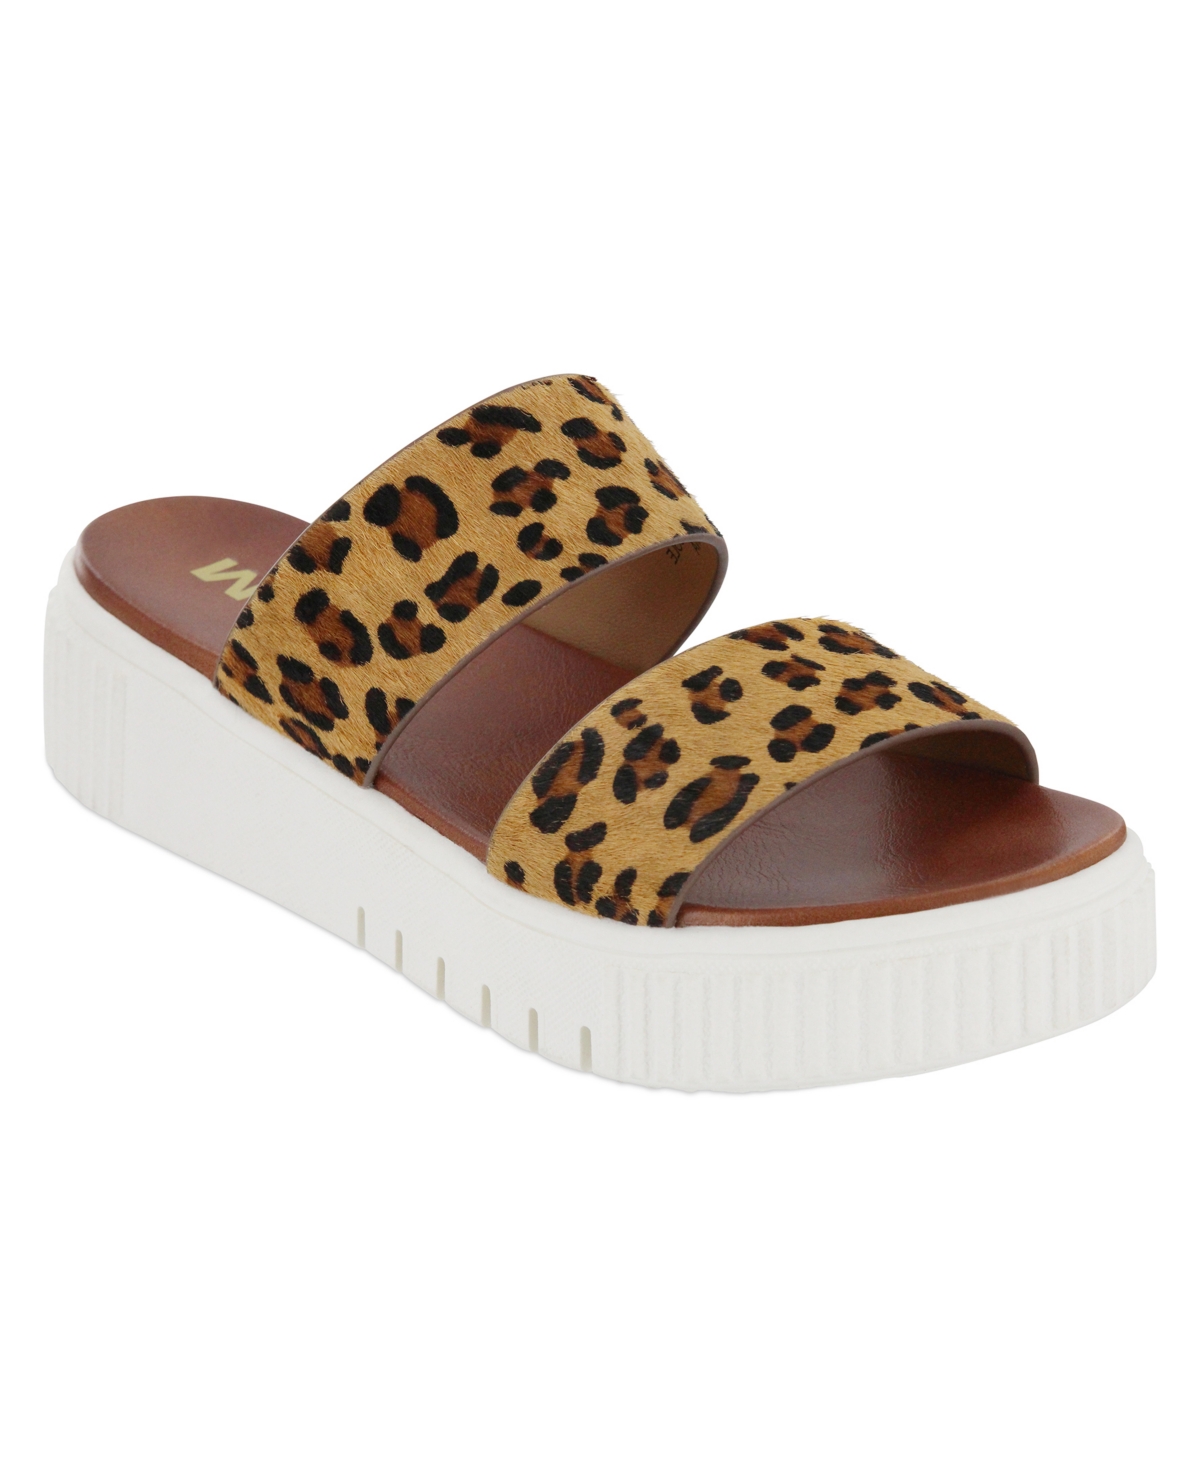 Women's Lexi-l Round Toe Sandals - Jaguar